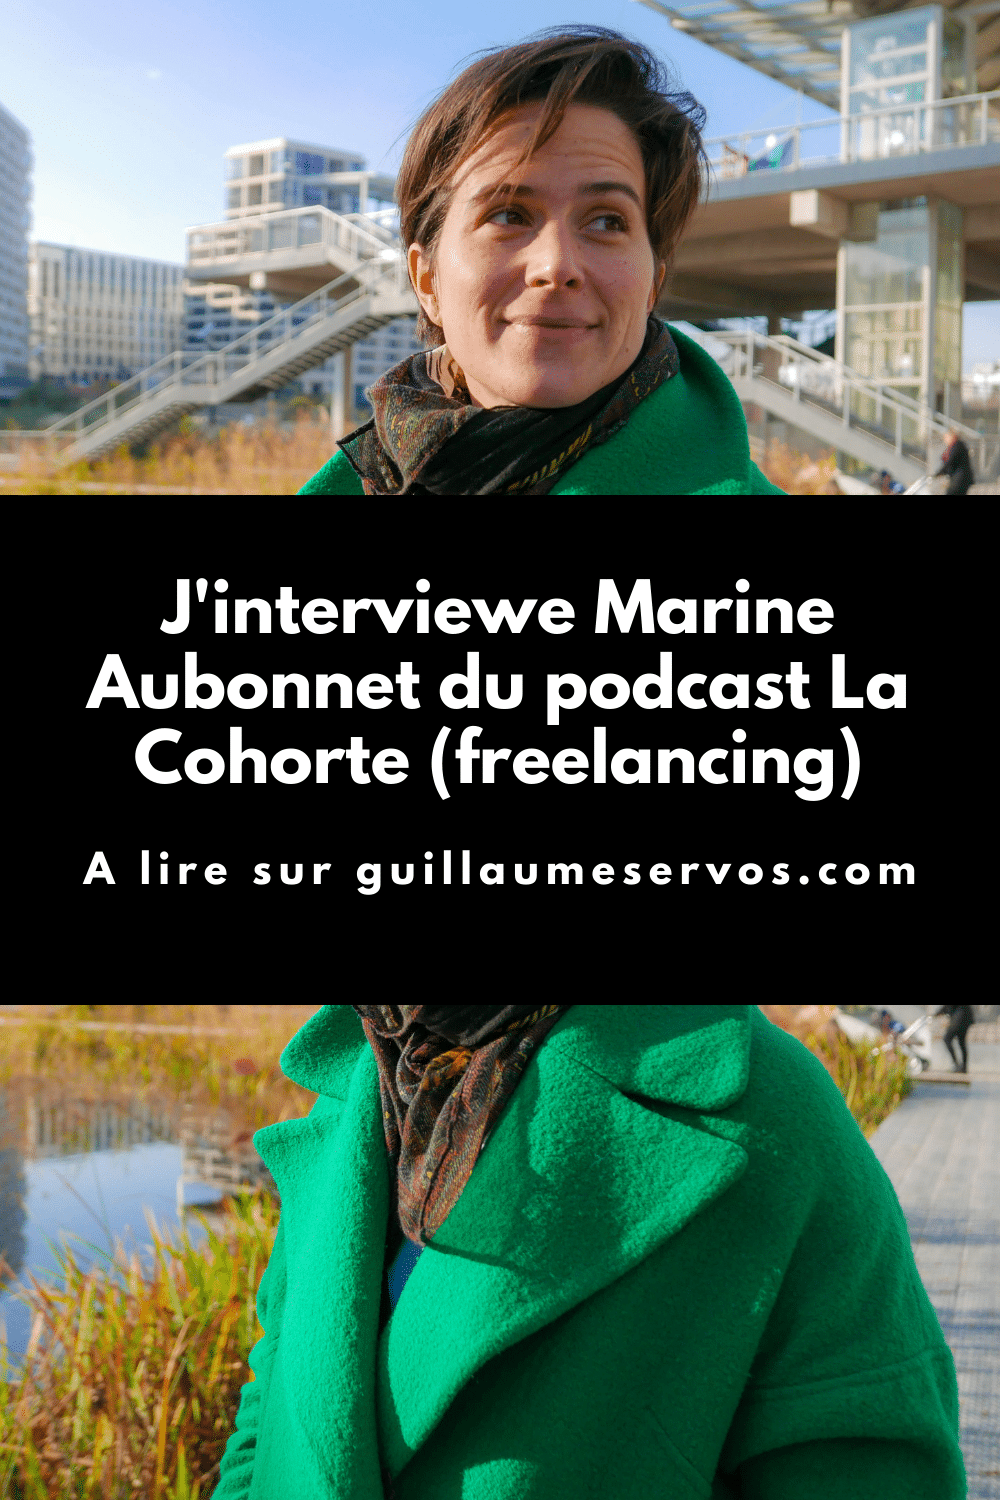 Découvre mon interview avec Marine Aubonnet du podcast La Cohorte. Au menu : son rapport au freelancing, au podcasting, aux réseaux sociaux et au voyage.